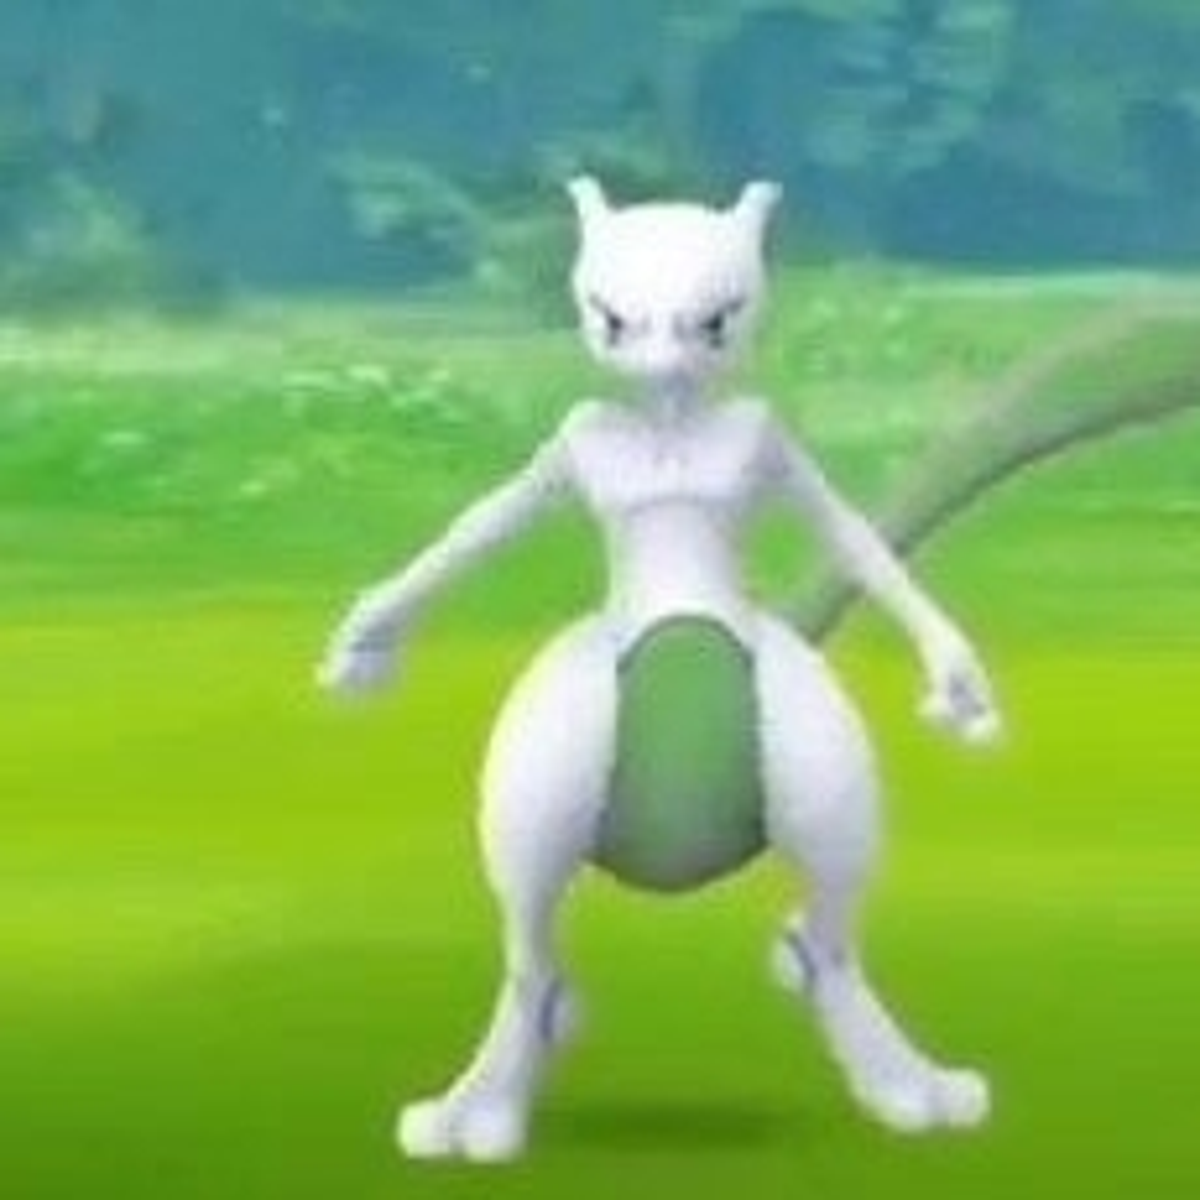 Pokémon Go - Como obter Mewtwo shiny e quais os counters